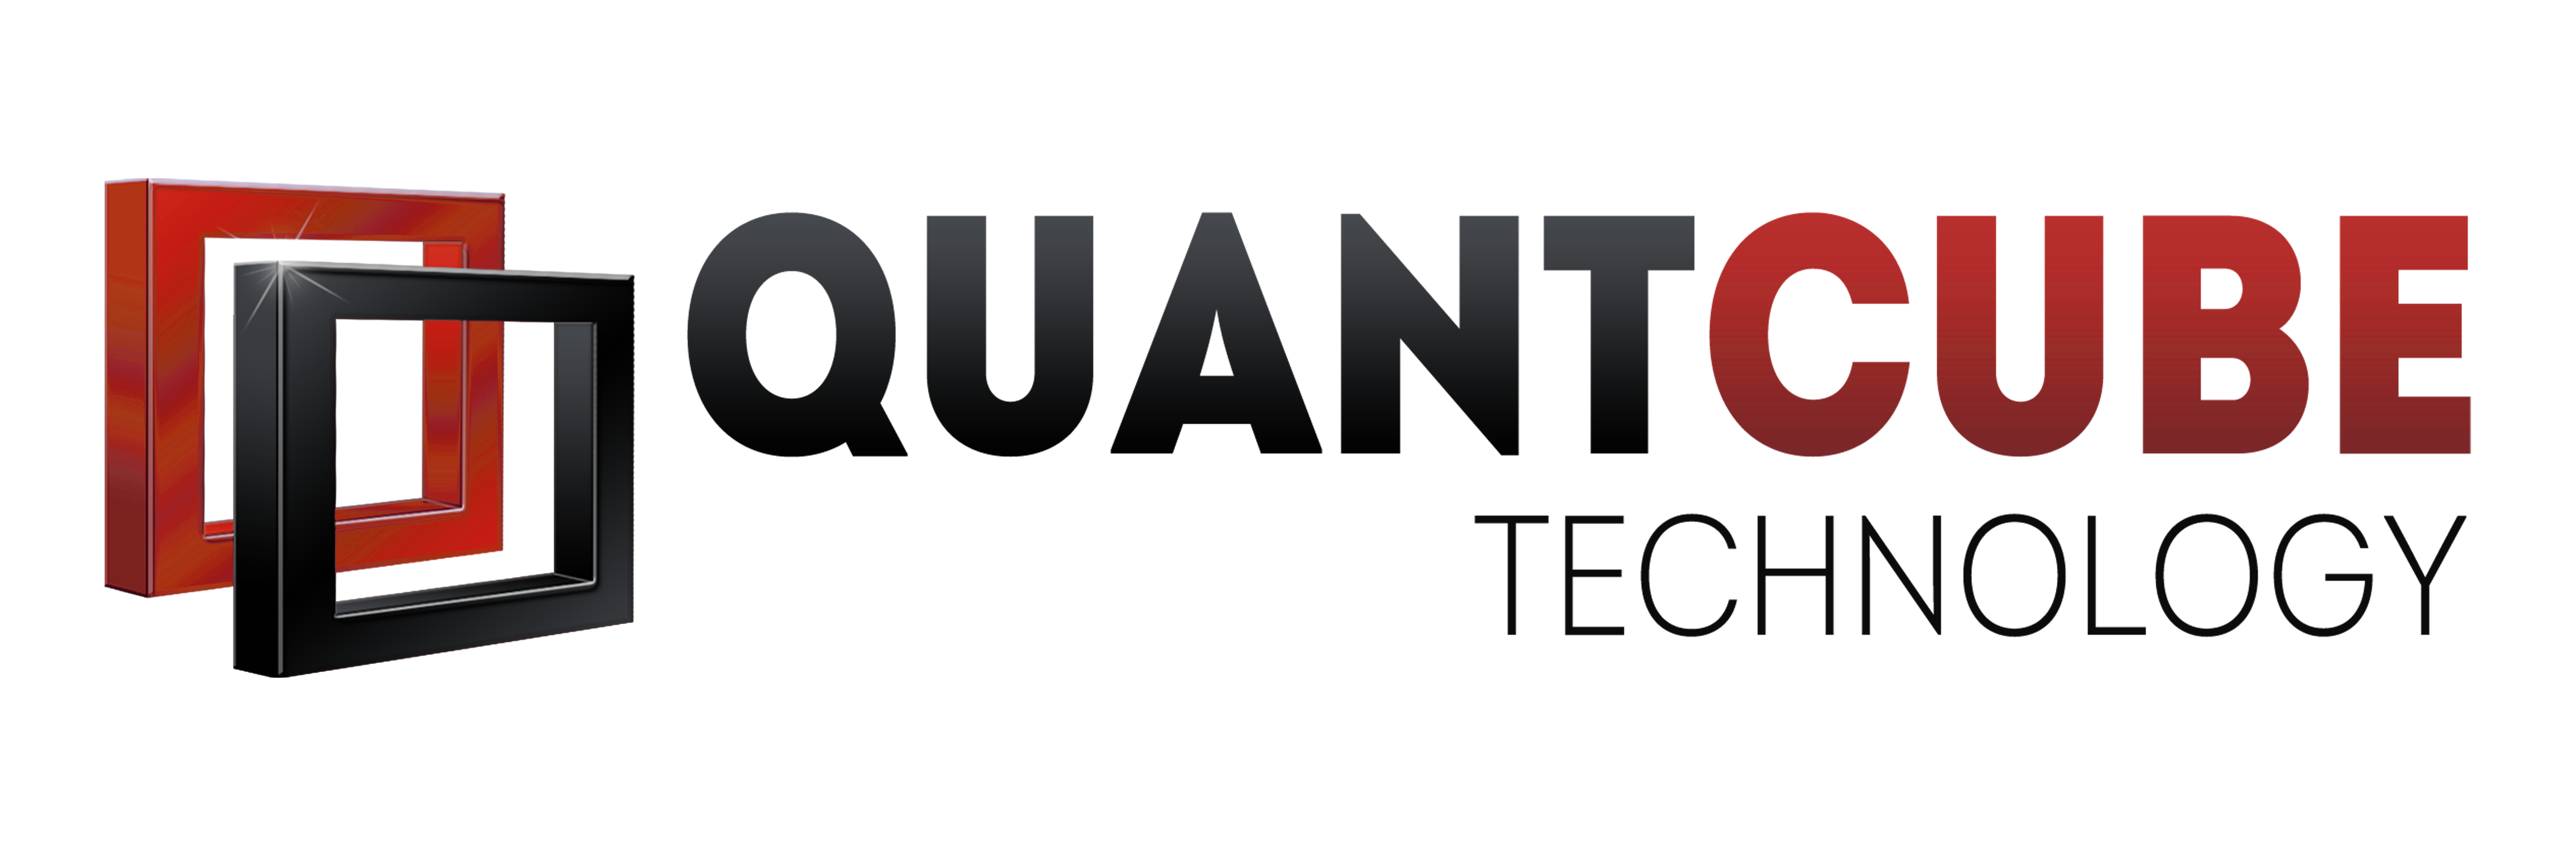 Q3-logo-ultra-HD-2-red-fond-blanc.png